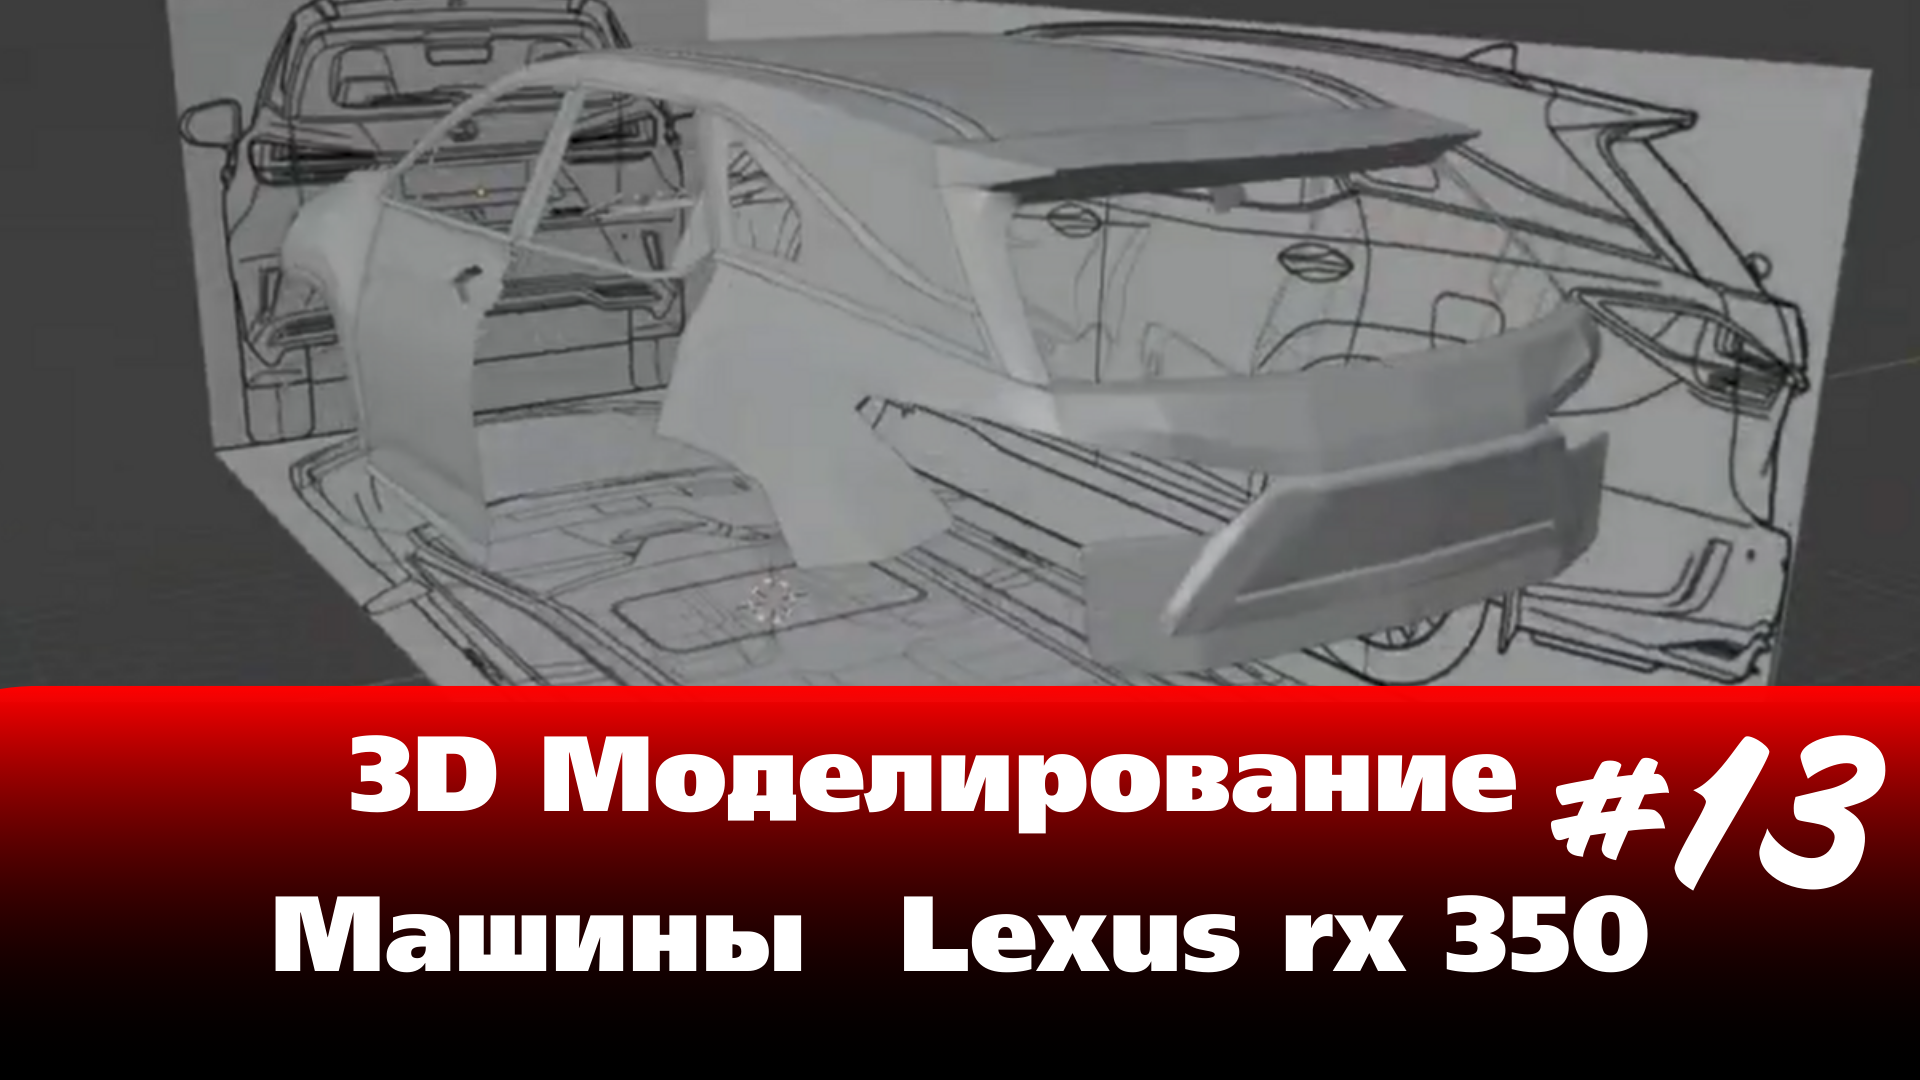 3D Моделирование Машины в Blender - Lexus rx 350 часть 13 #Blender